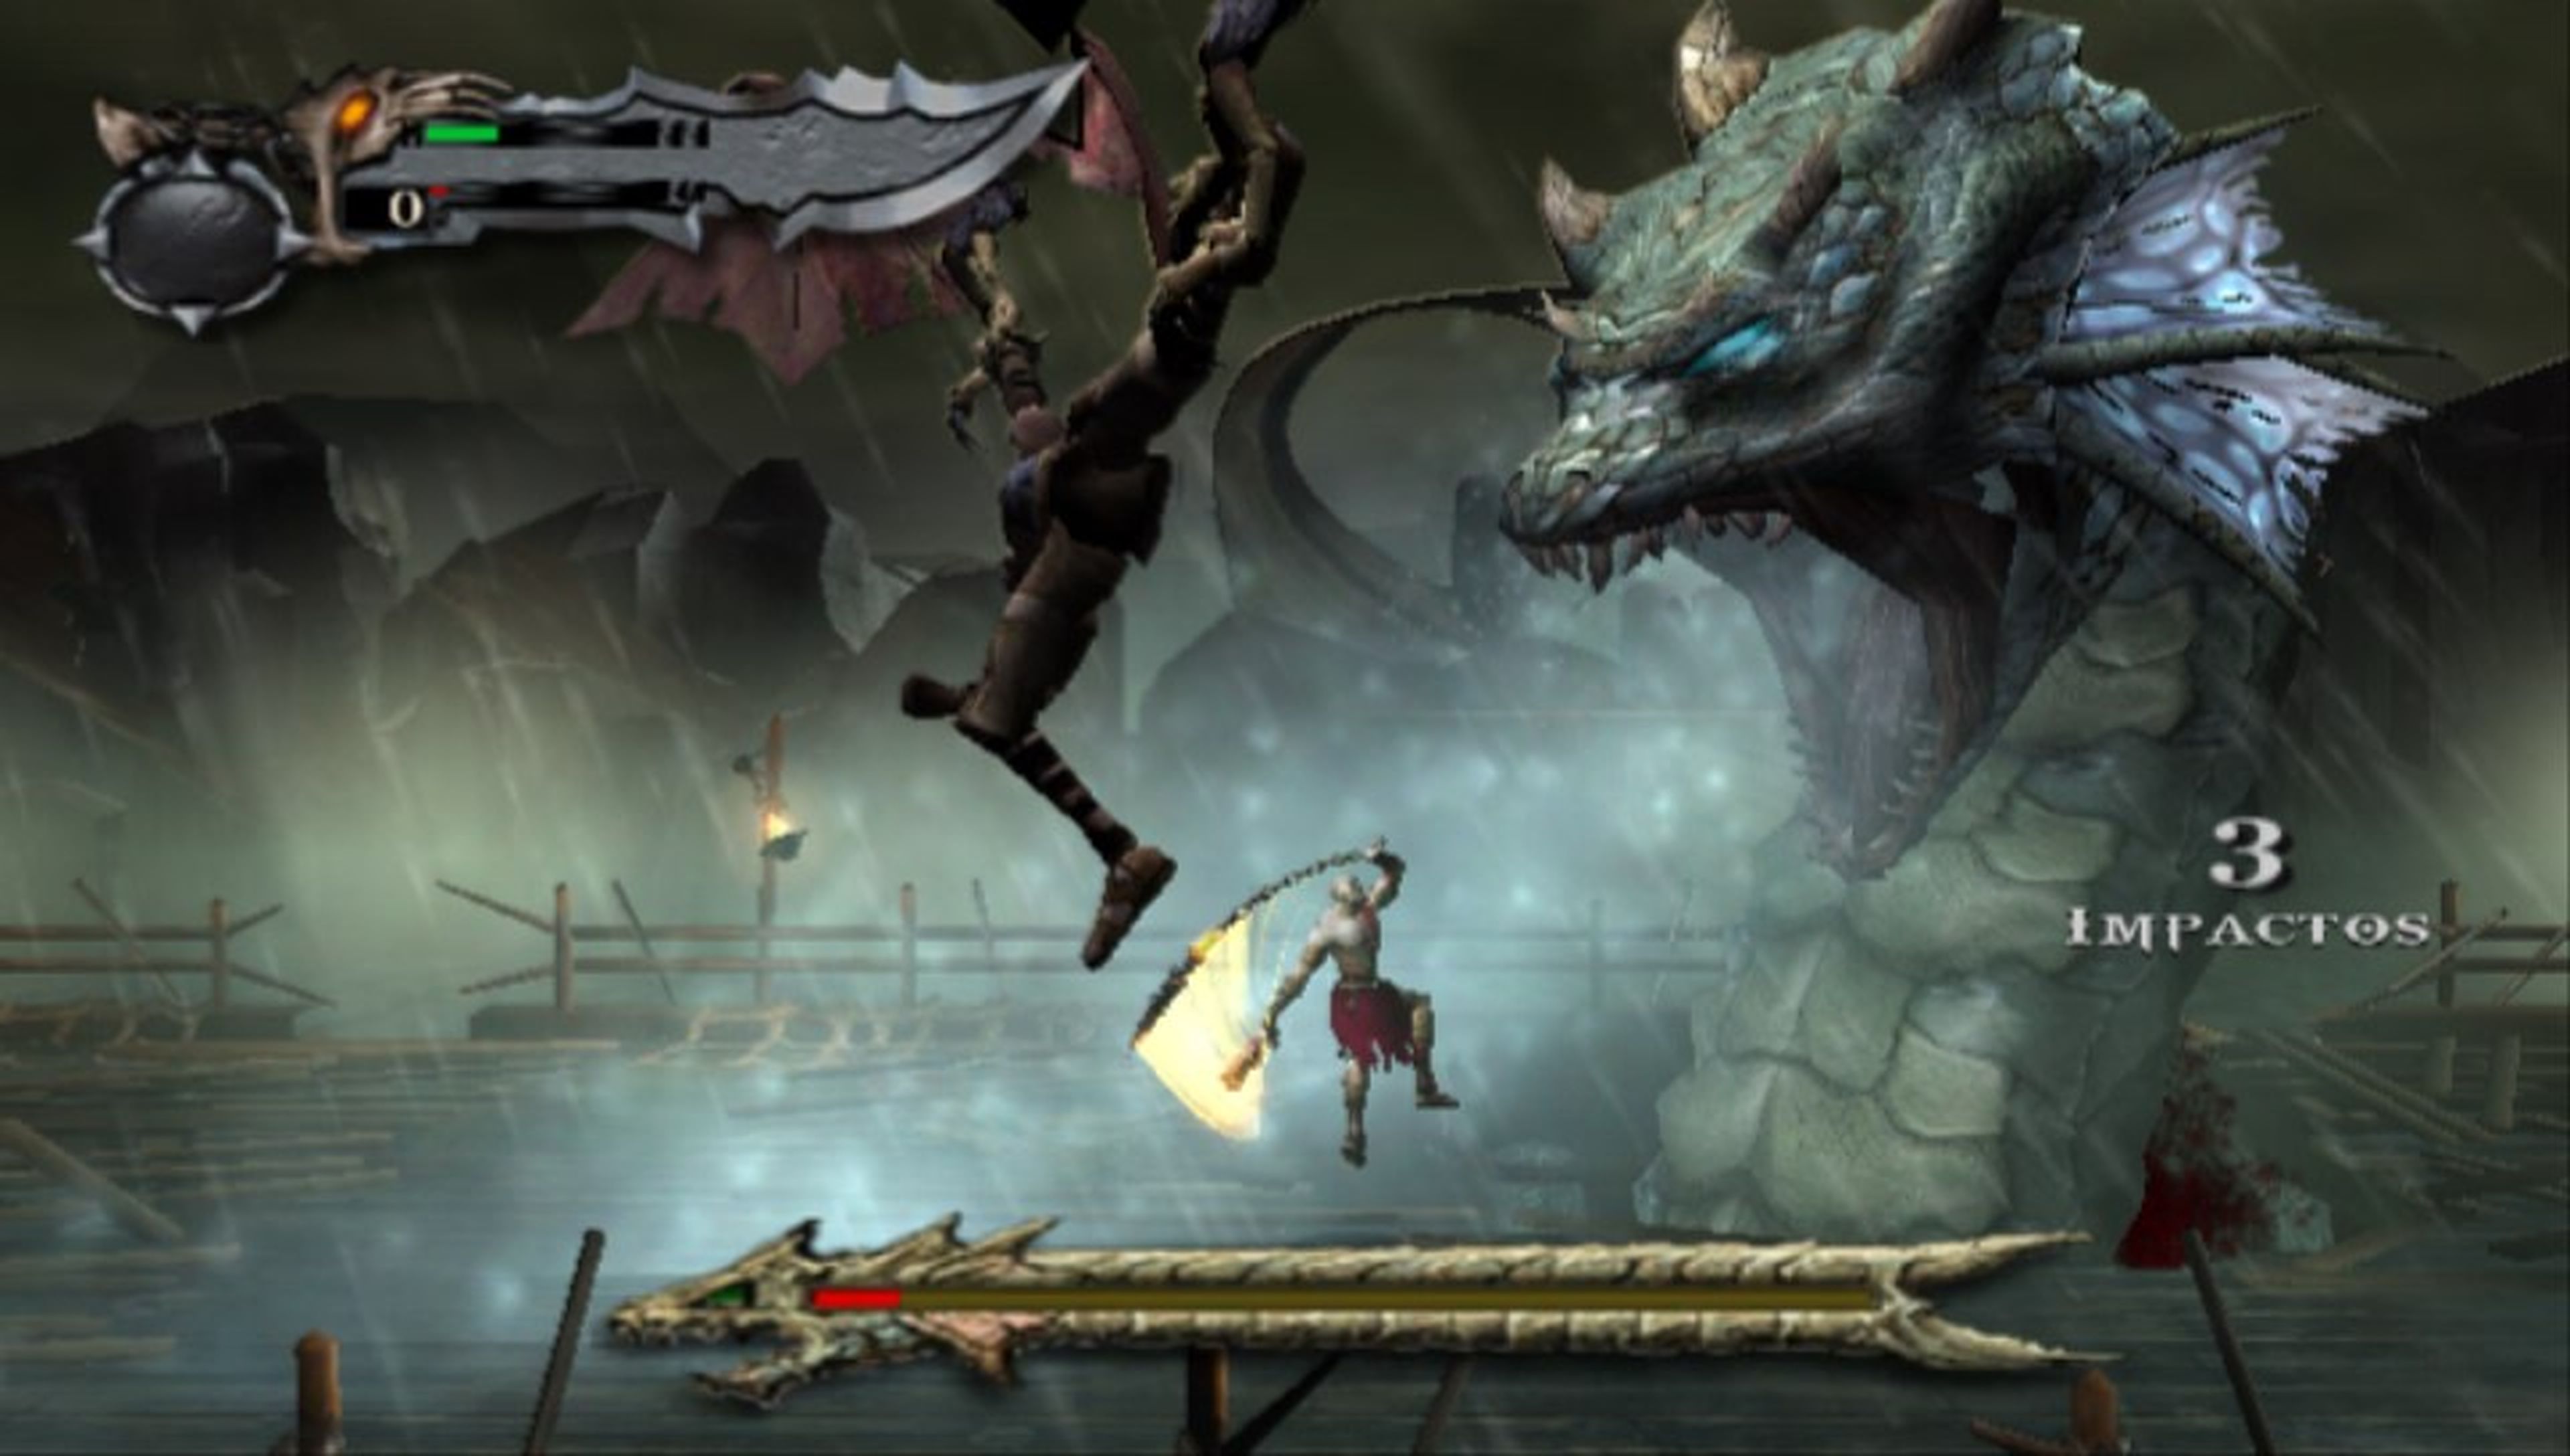 Análisis de God of War Collection para PS Vita